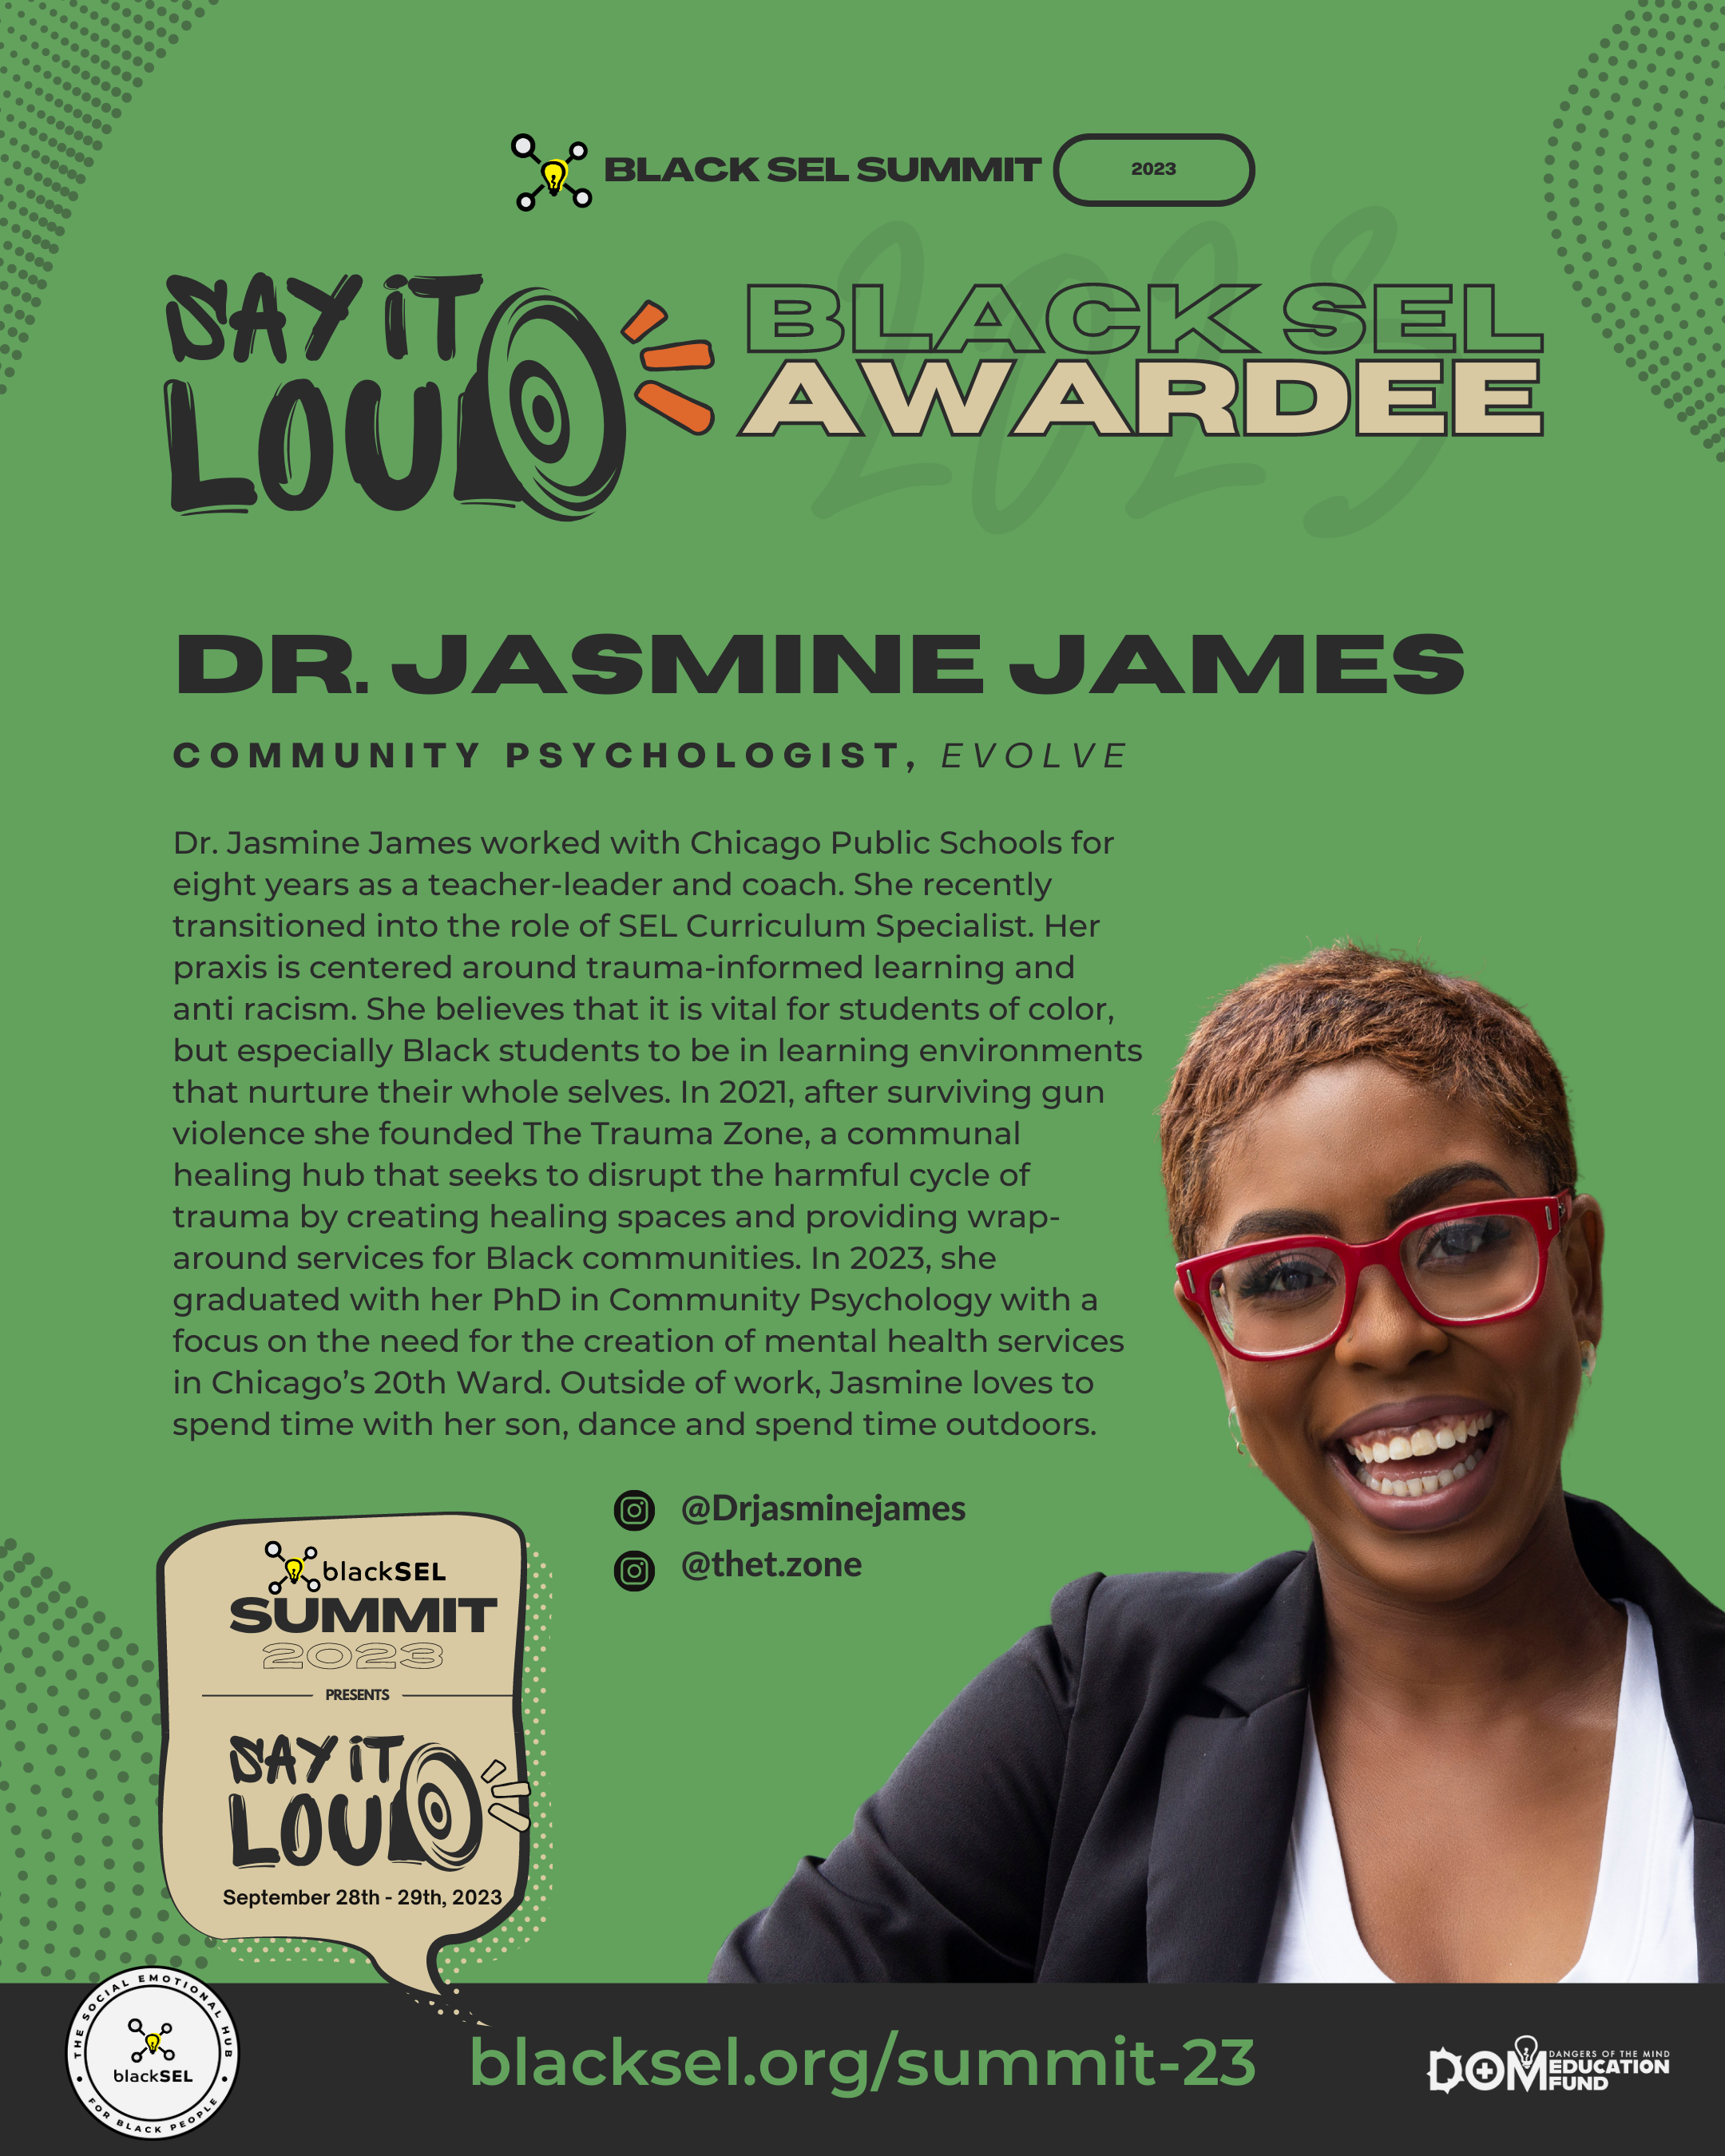 Dr. Jasmine James